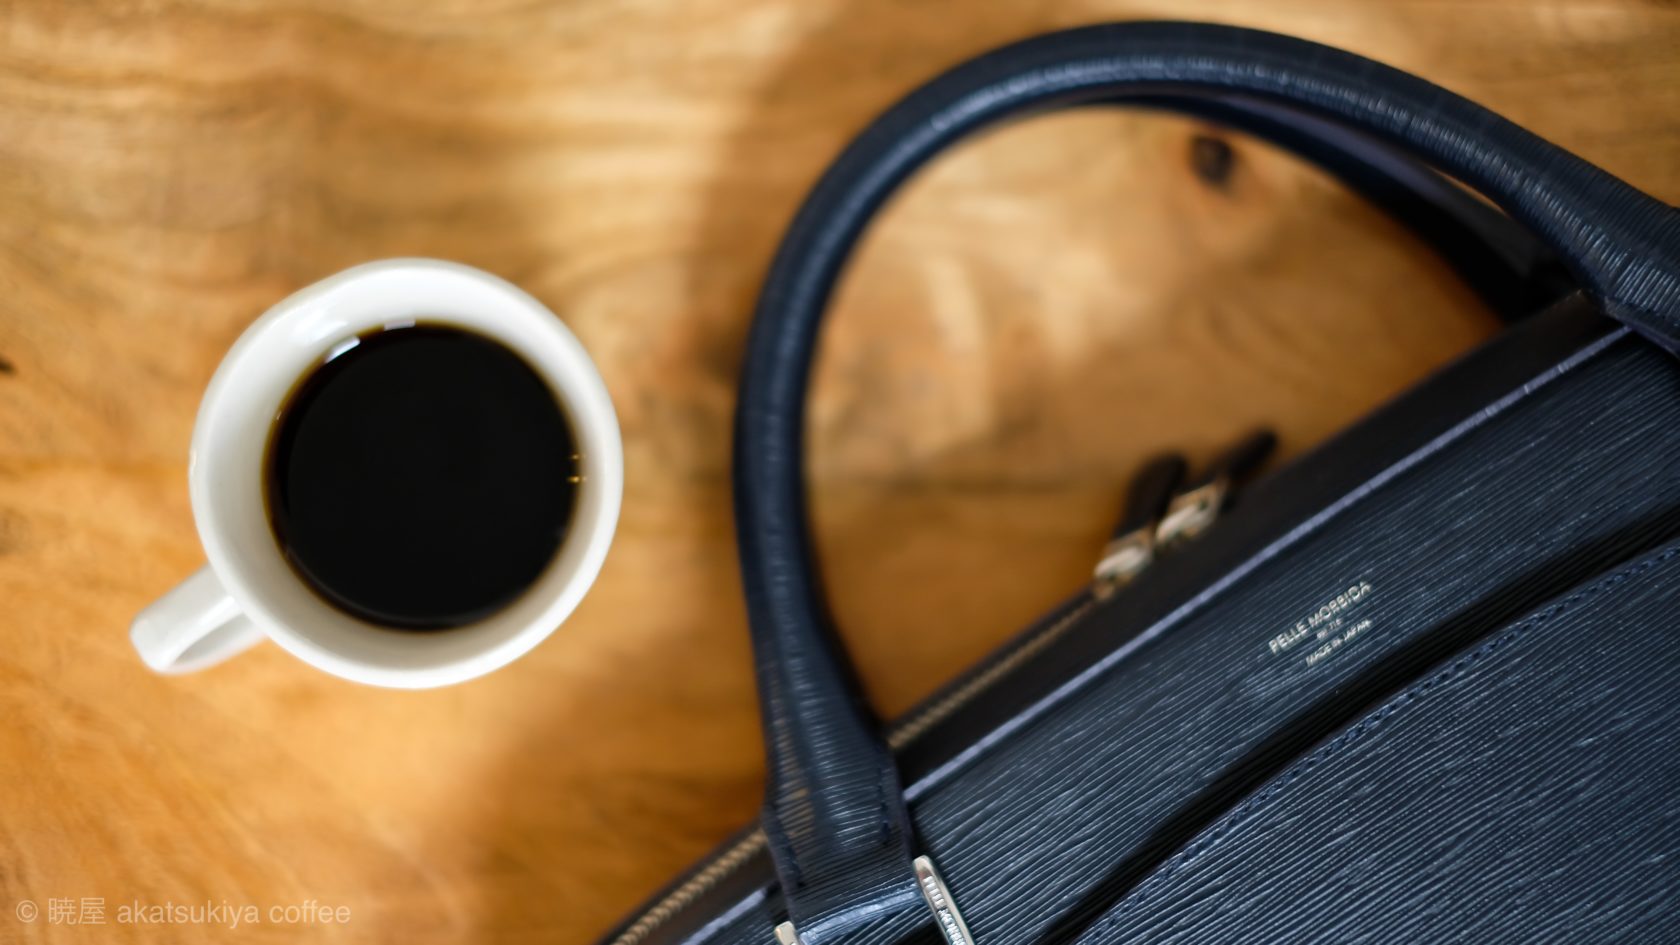 Pelle Morbida Capitano business bag for Coffee Lover - Akatsukiya 